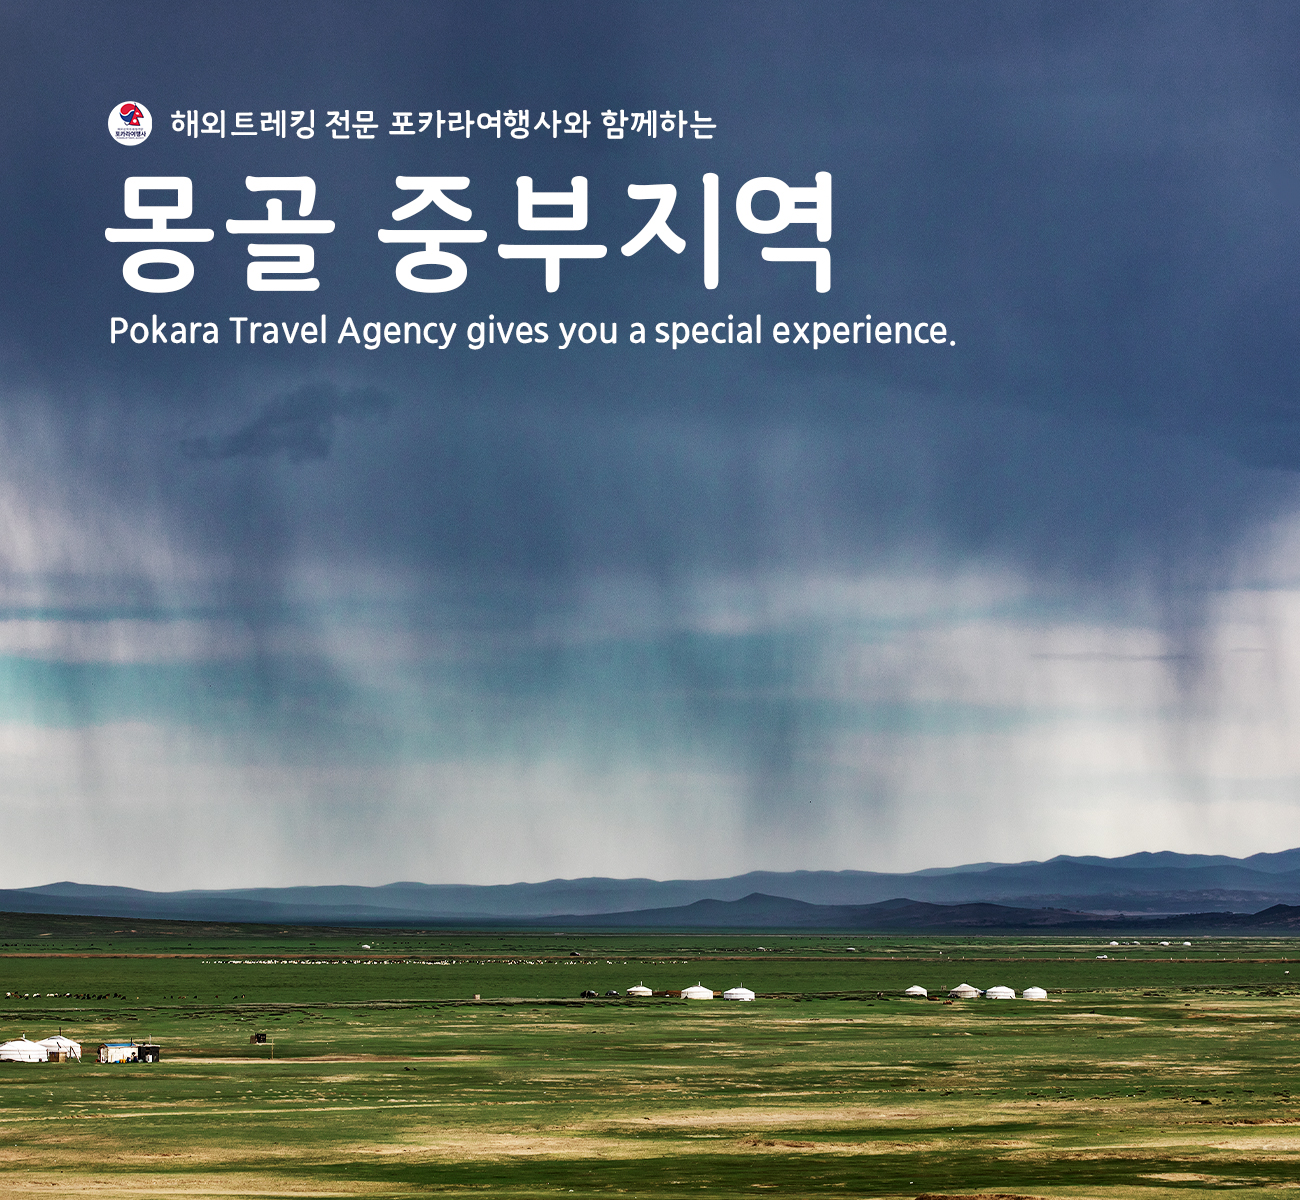 [소그룹/단체] 몽골 중부지역 5일